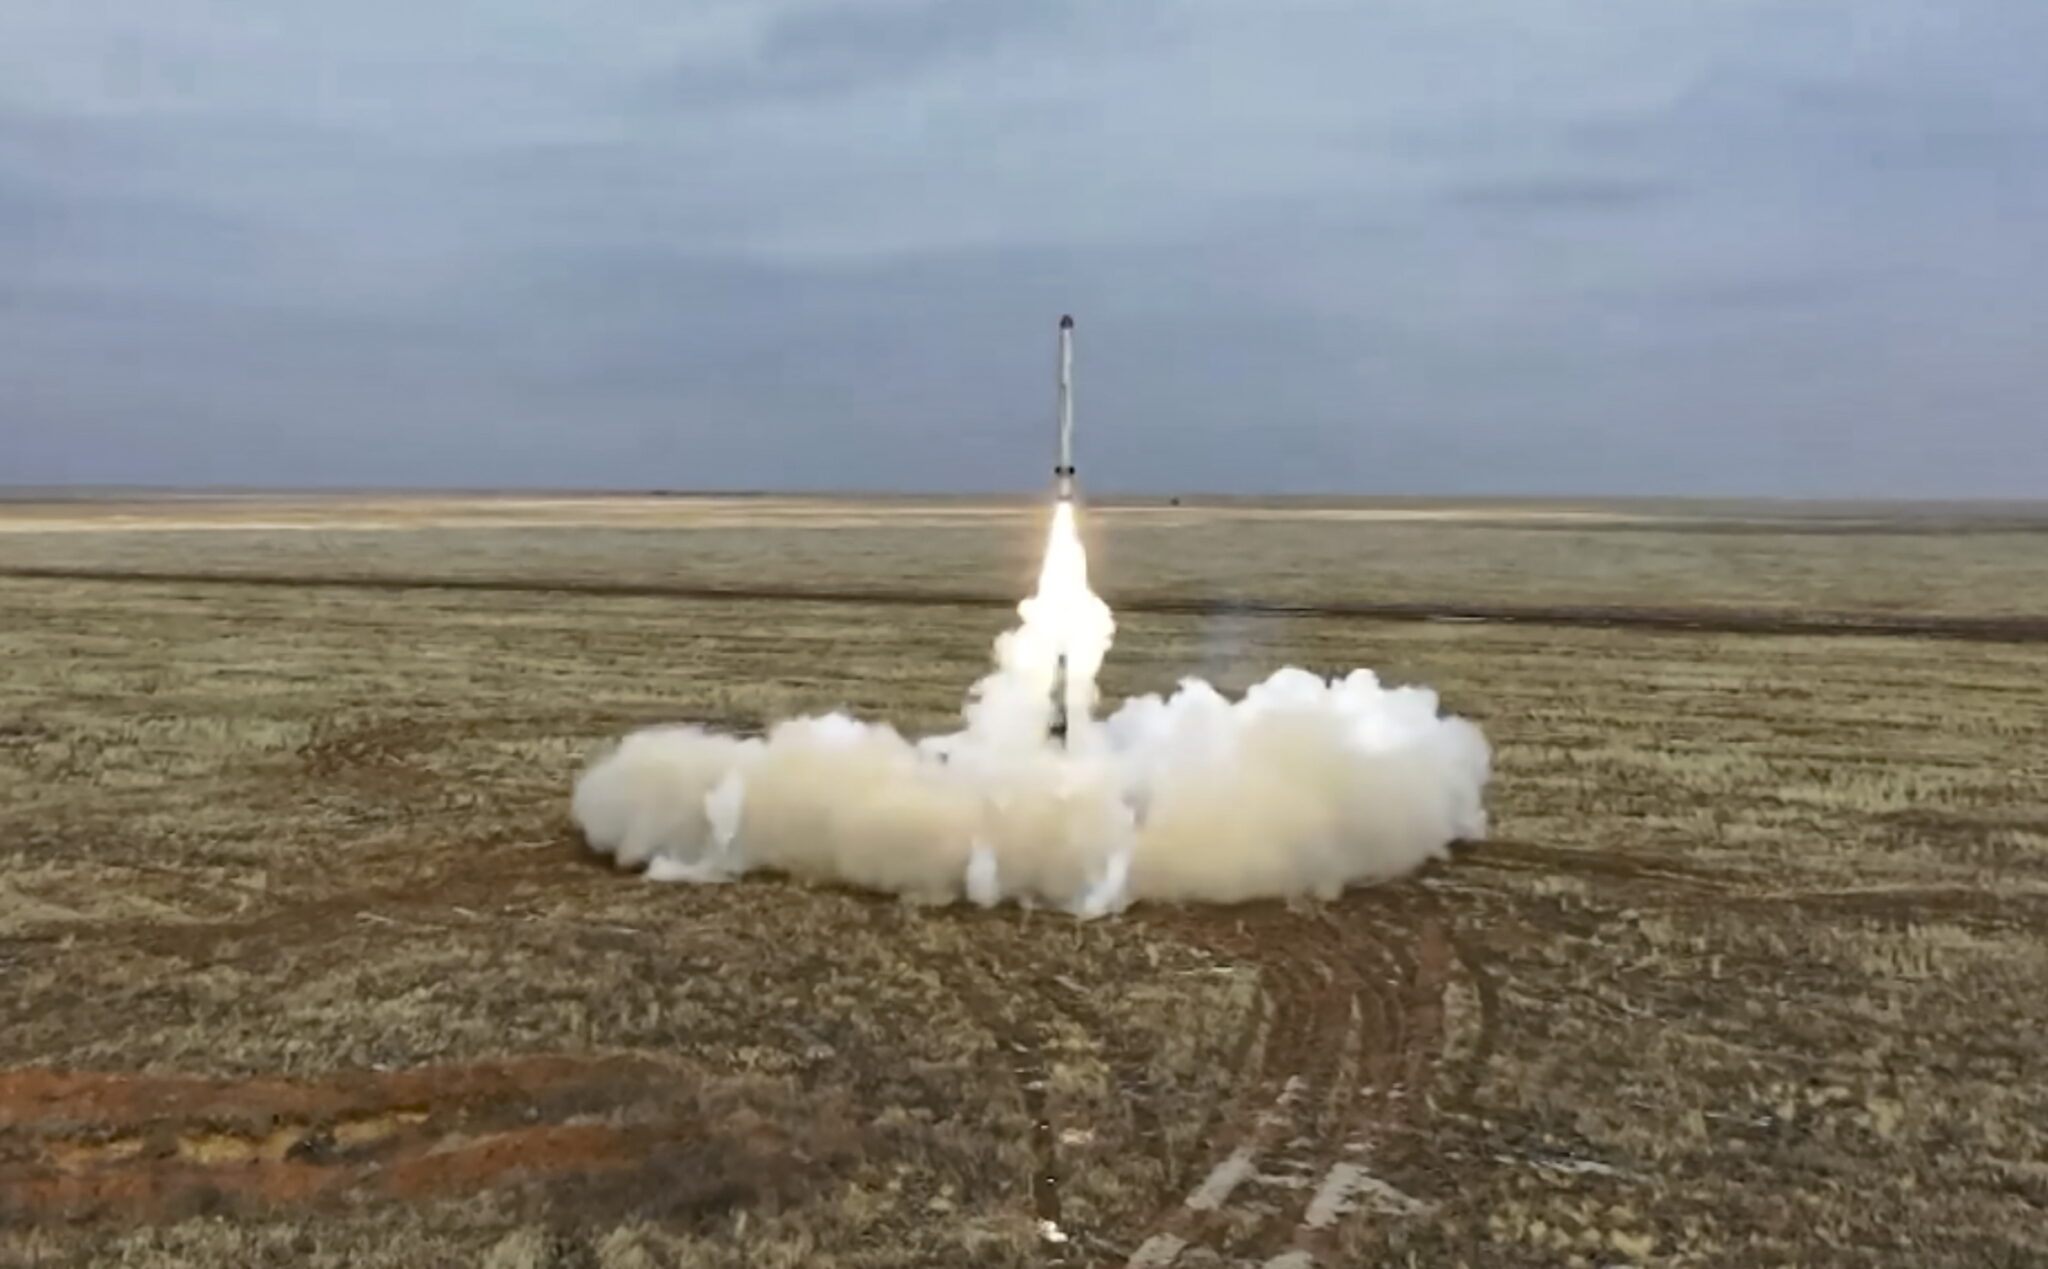 Запуск крылатой ракеты наземного базирования «Искандер» на полигоне Капустин Яр в Астраханской области. 19 февраля 2022 года. Фото RUSSIAN DEFENCE MINISTRY PRESS SERVICE/EPA/Scanpix/Leta